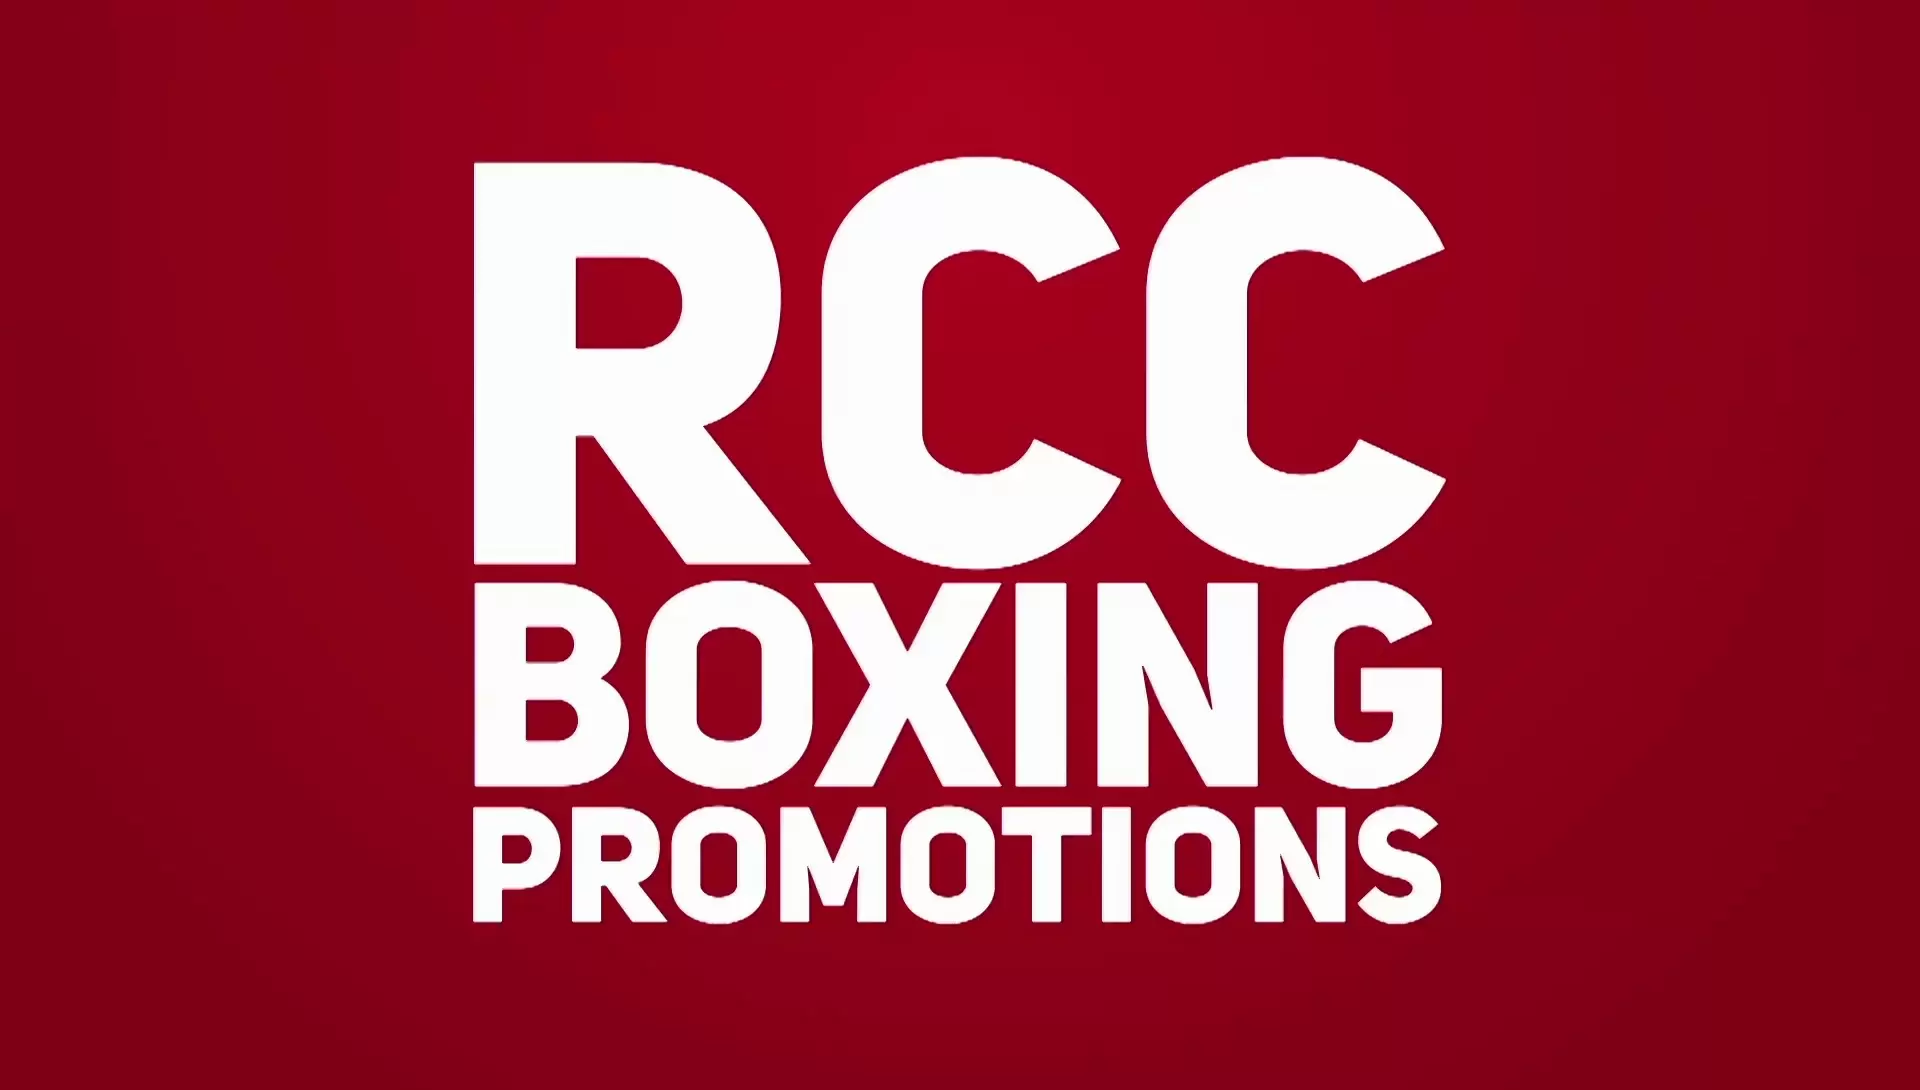 Boxing promotions. RCC Boxing. RCC Boxing promotions. RCC логотип. RCC Boxing promotions логотип.